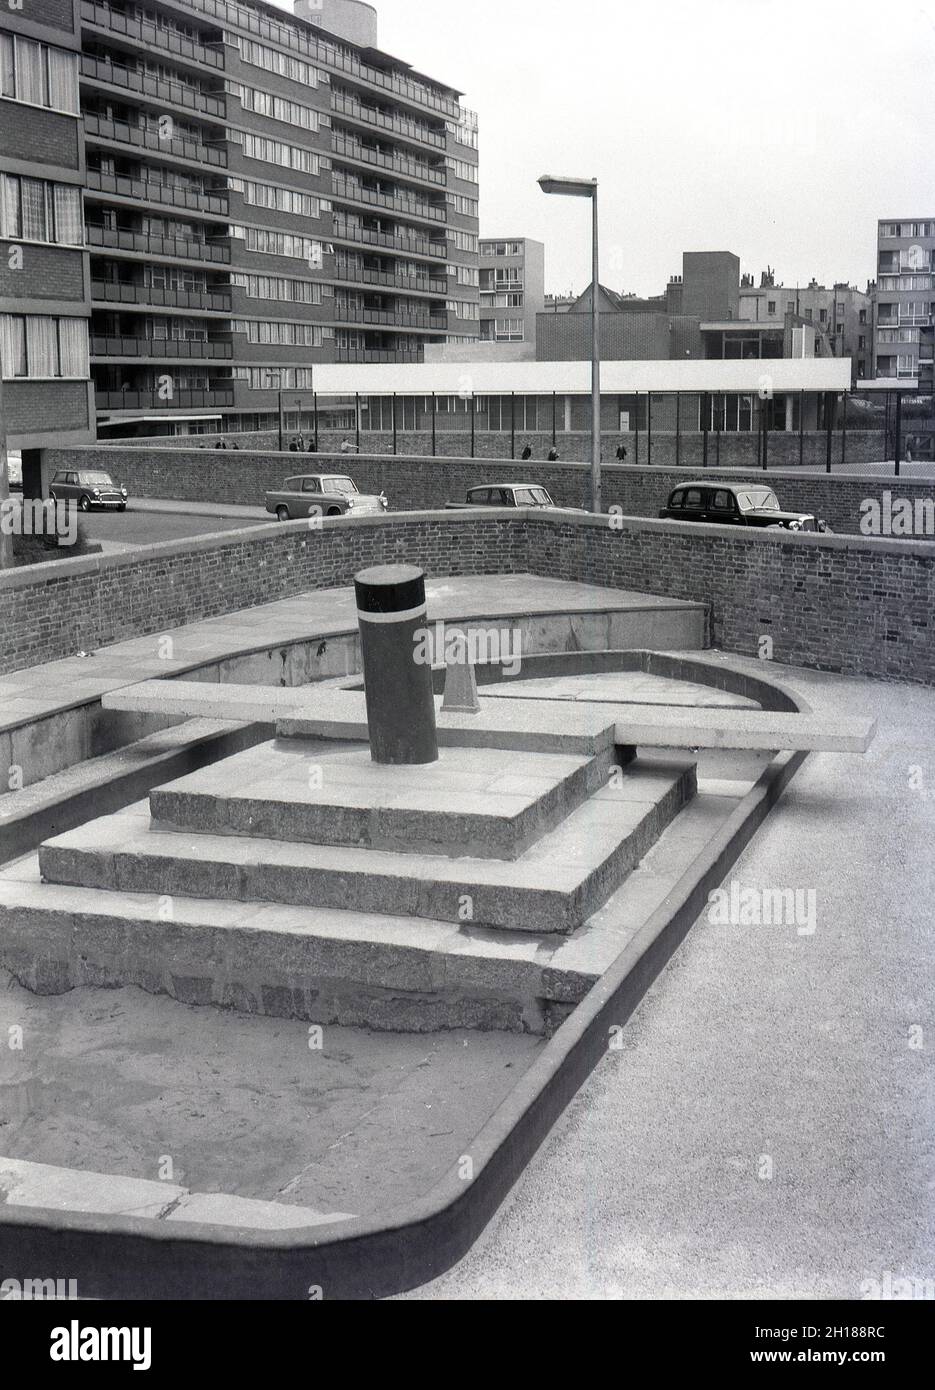 Années 1960, historique, terrain de jeu en béton et clos à l'extérieur d'un grand domaine de logement de conseil, Churchill Gardens à Pimlico, dans le centre de Londres, Angleterre, Royaume-Uni.Construit entre 1948 et 1962 pour remplacer les terrasses victoriennes endommagées dans le Blitz de la Seconde Guerre mondiale, c'était un immense domaine de logement social, avec 32 blocs de tour fournissant 1,600 maisons.À l'extérieur des appartements, une enceinte fortifiée avec une aire de jeux en béton et un bac à sable en forme de bateau. Banque D'Images